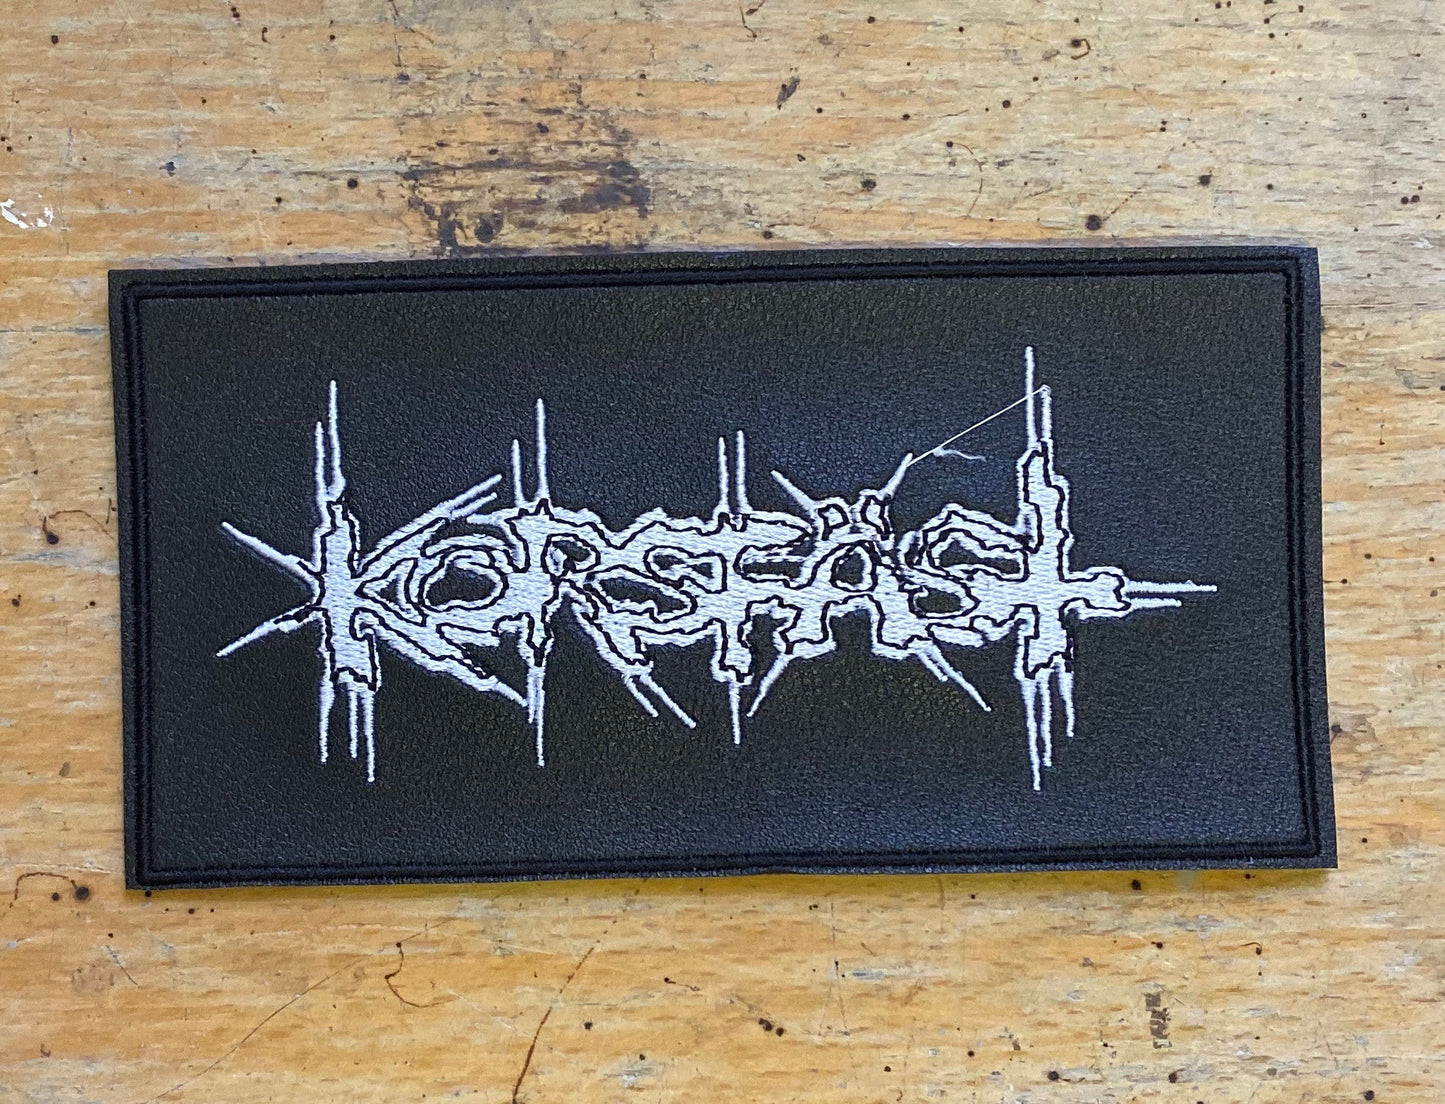 Korsfäst - Fake Leather Patch - Insane//Phobia Embroidery